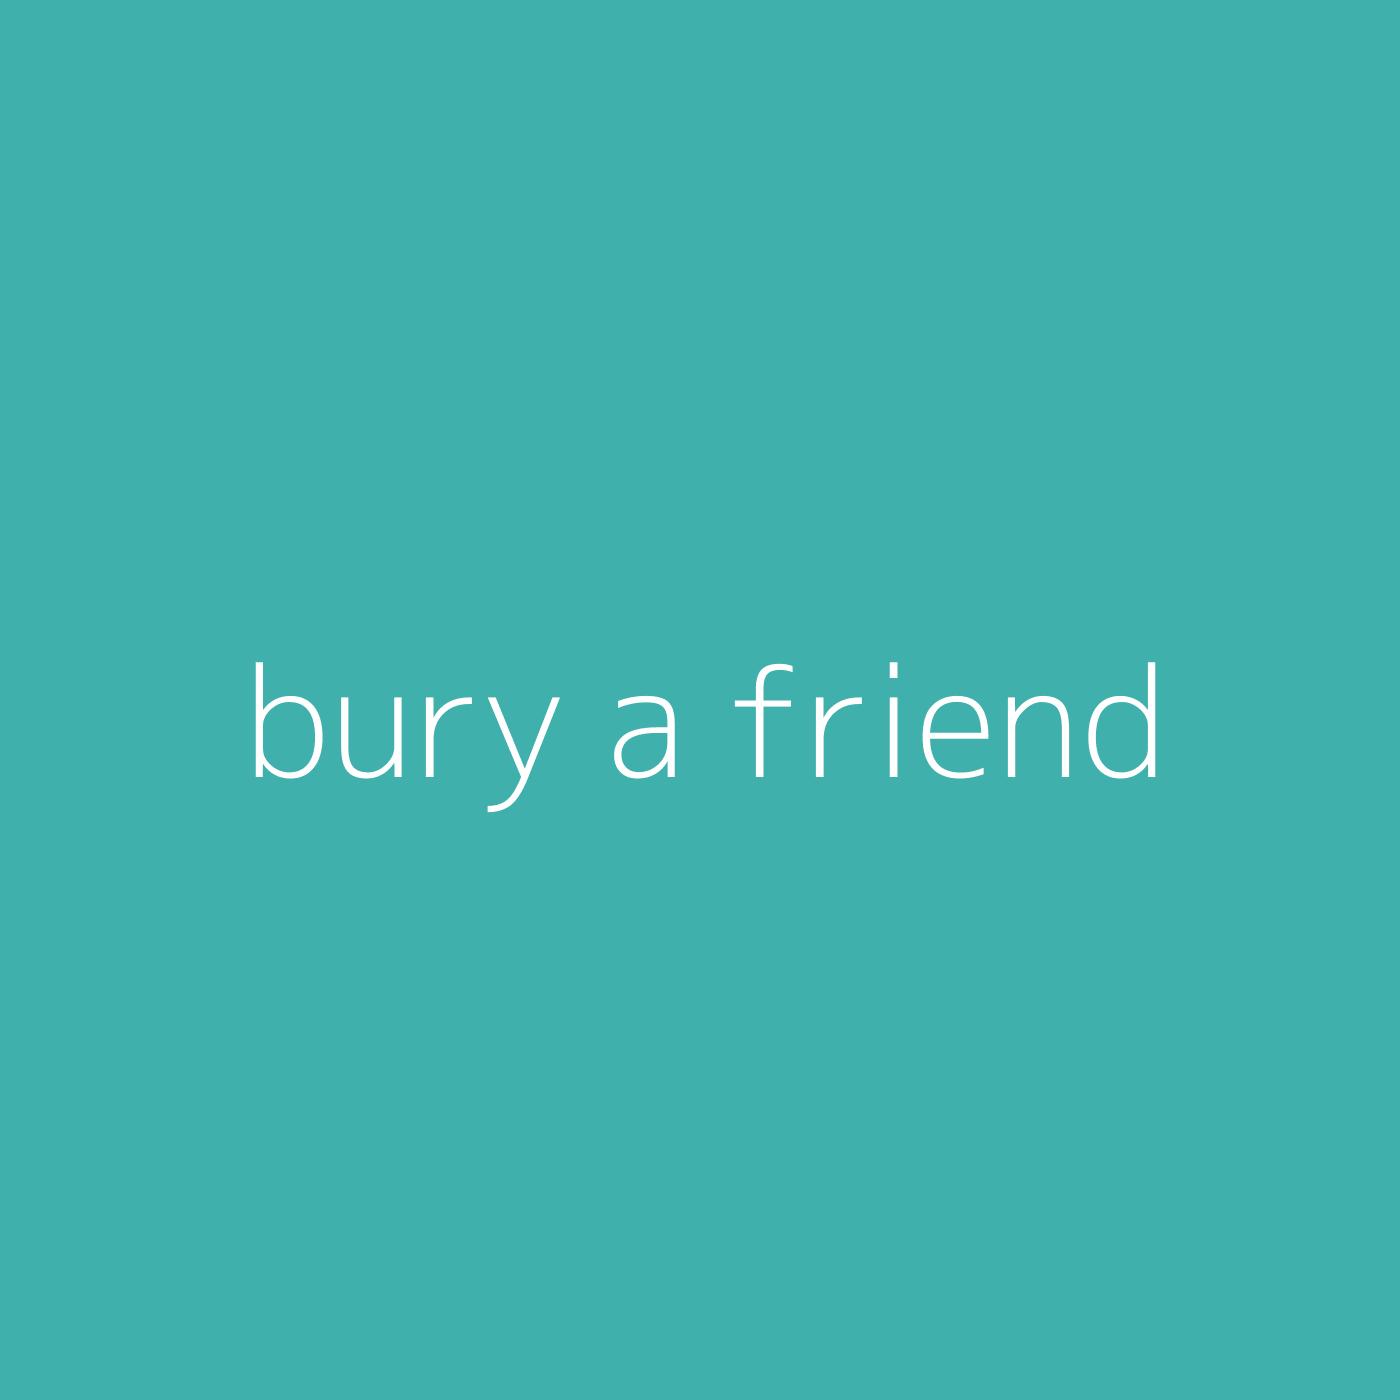 bury a friend – Billie Eilish